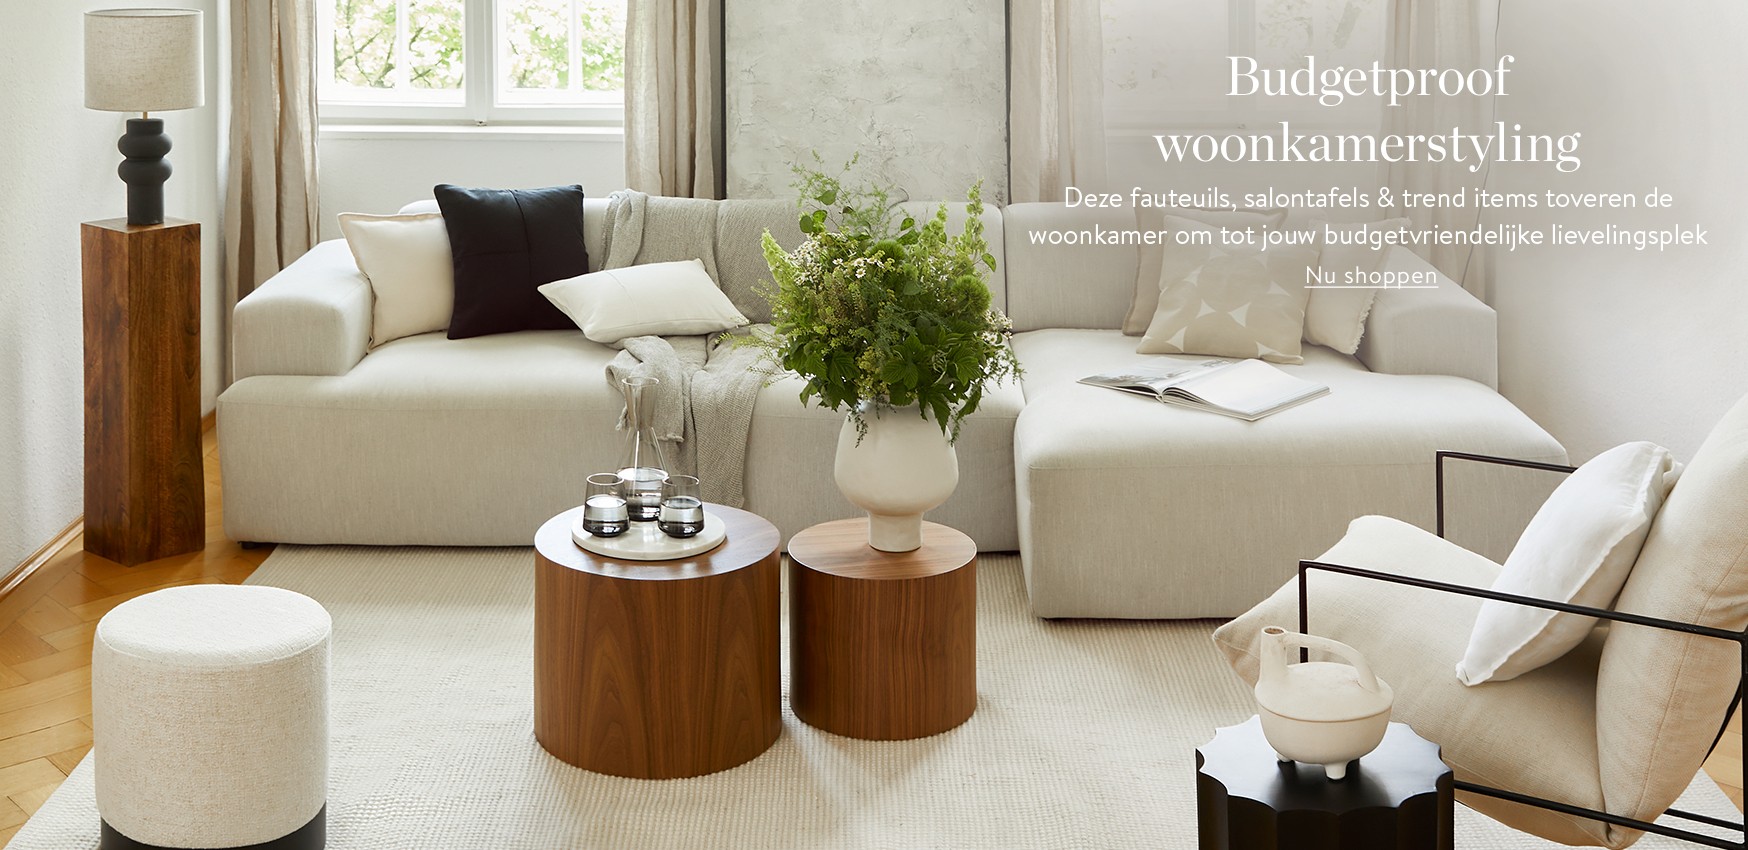 Budgetproof woonkamerstyling                                          Deze meubels toveren de woonkamer om tot jouw budgetvriendelijke lievelingsplek 